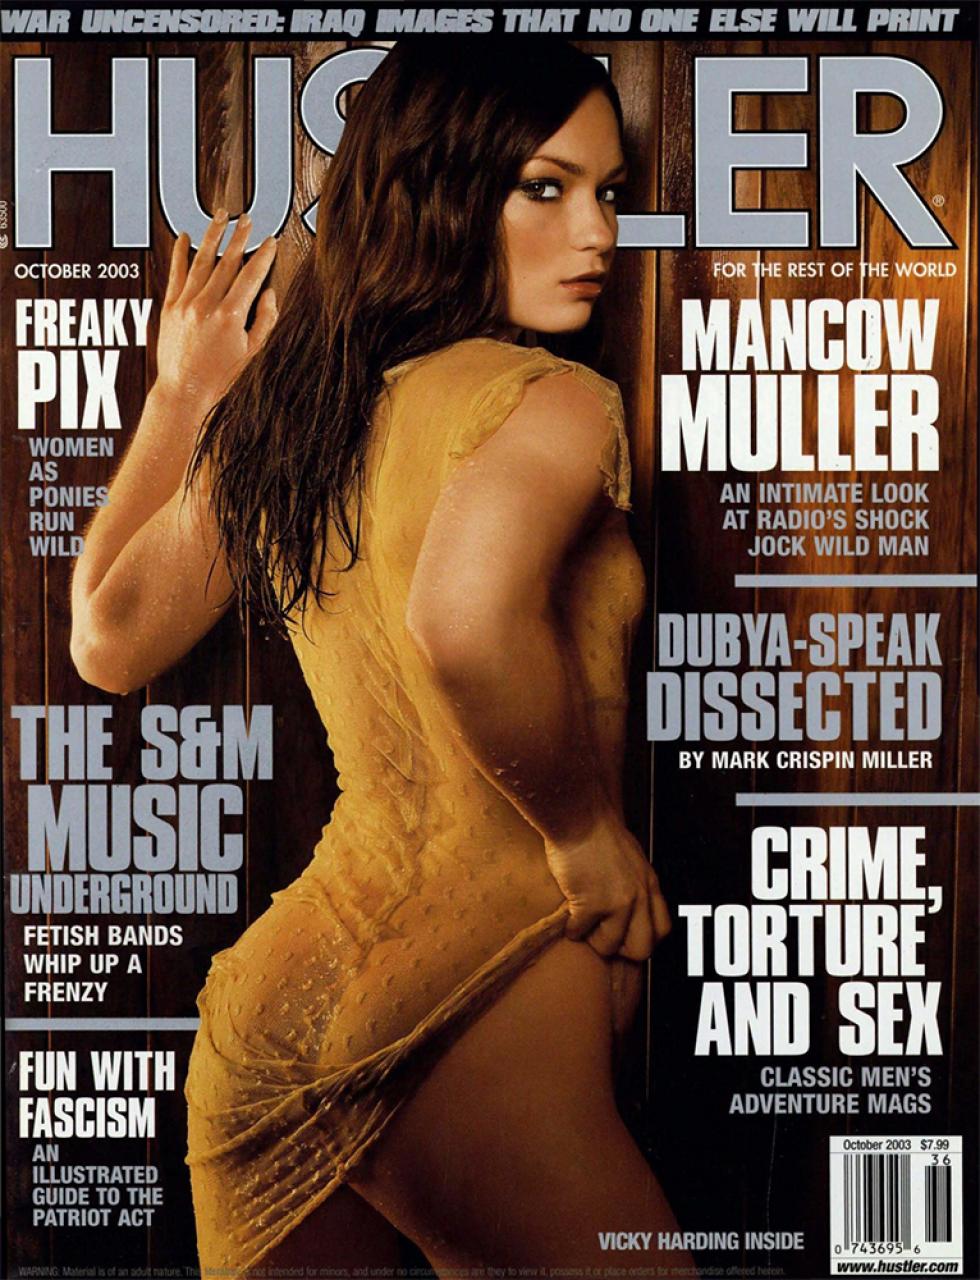 October 2003 - HUSTLER Magazine.